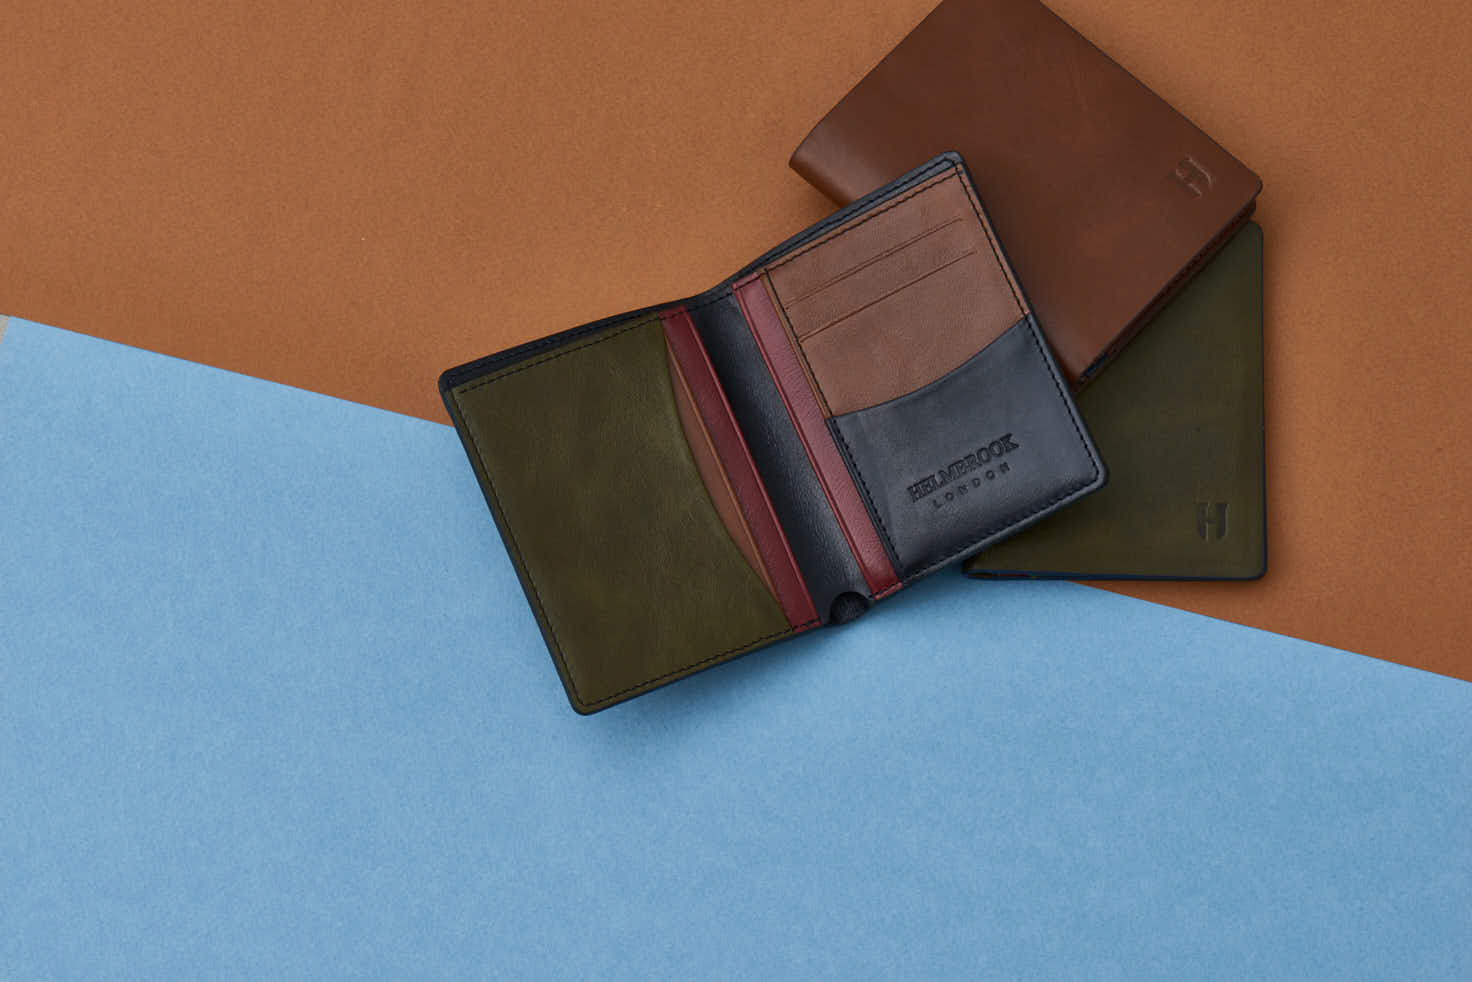 Leather Vertical Slim Wallet - Tan